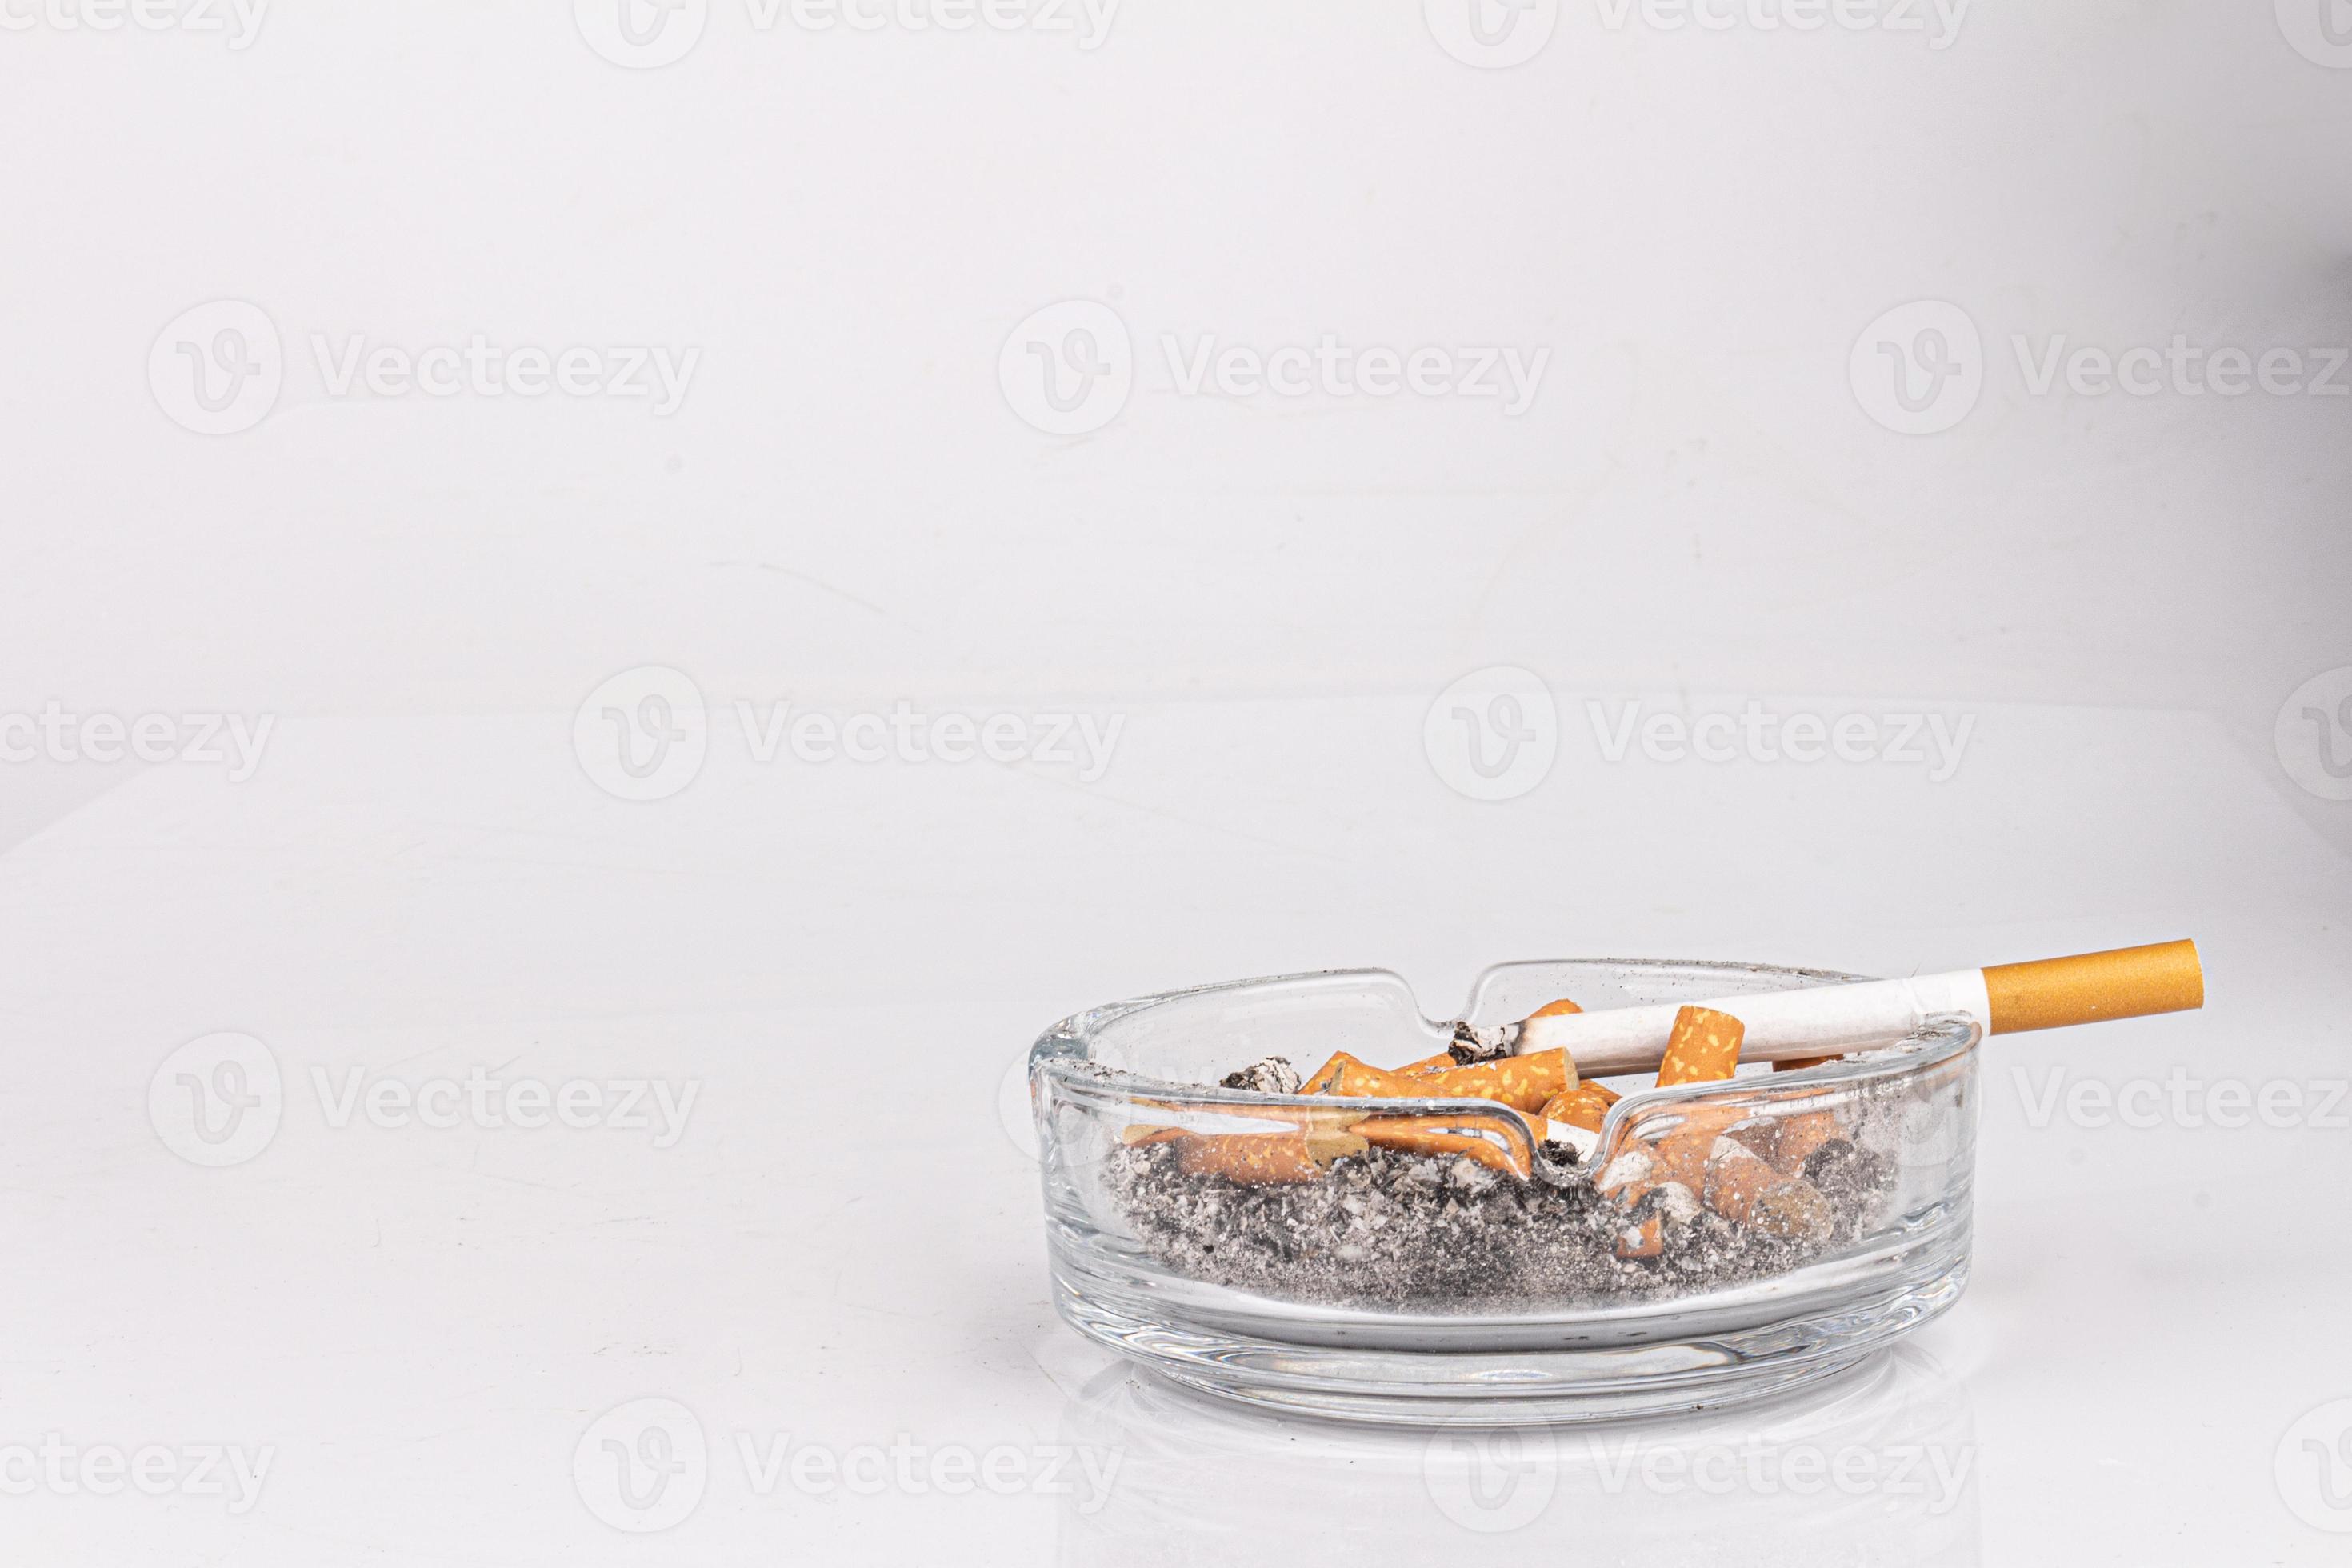 https://static.vecteezy.com/ti/fotos-kostenlos/p2/19894797-zigarette-aschenbecher-weiss-hintergrund-asche-rauch-hintern-foto.jpg